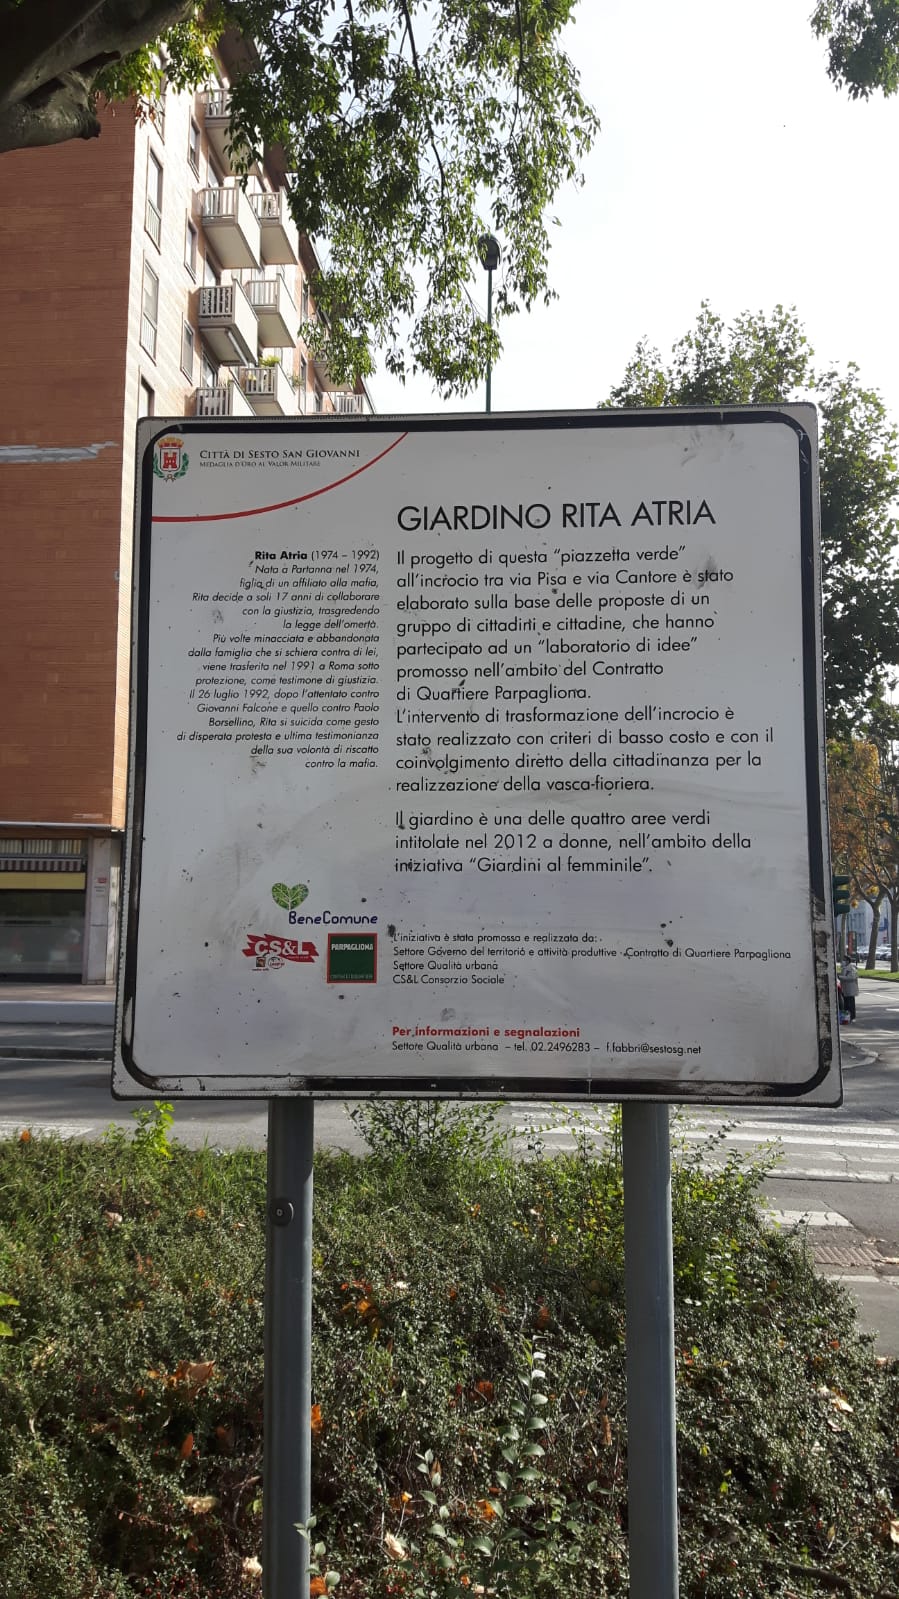 Piazzetta verde Pisa Cantore dedicata a Rita Atria